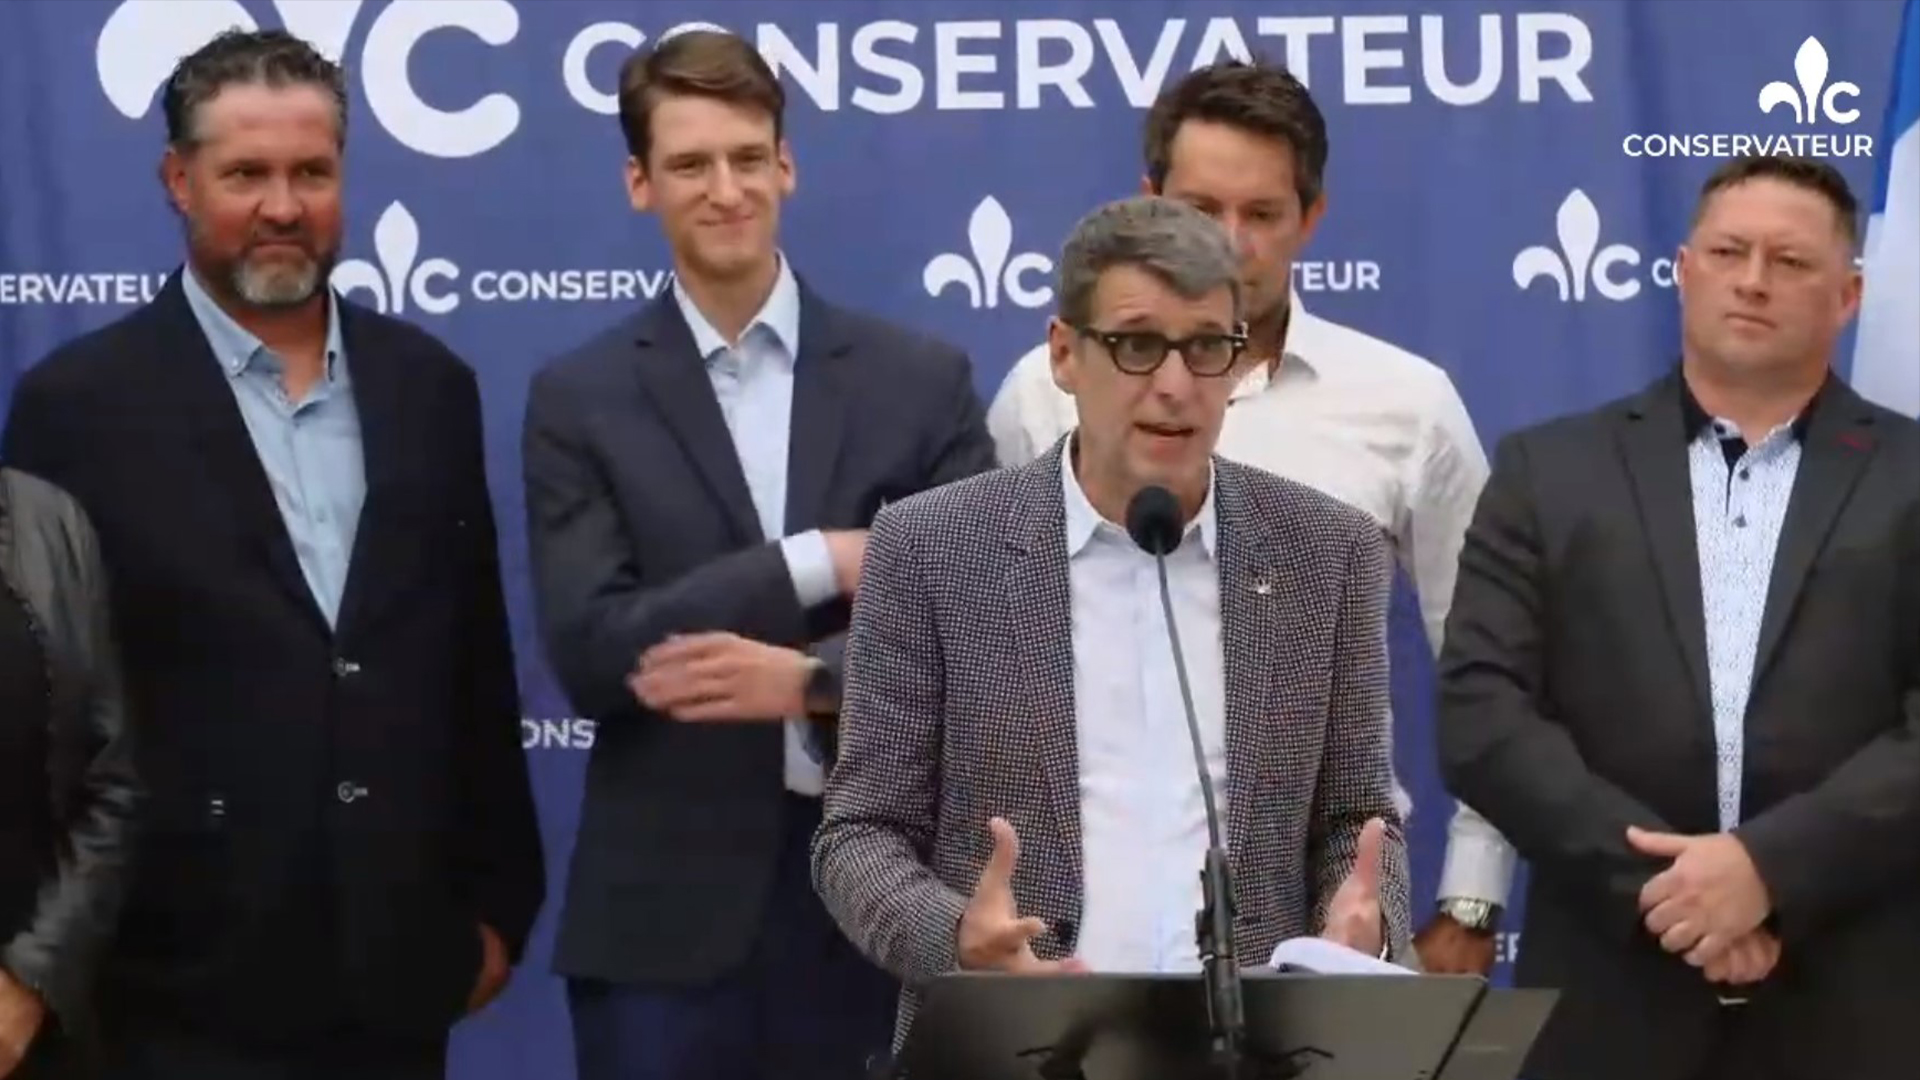 Le chef du Parti conservateur du Québec (PCQ), Éric Duhaime, a présenté mercredi les cinq candidats qui se présenteront dans les circonscriptions du Saguenay Lac-Saint-Jean lors des prochaines élections provinciales.